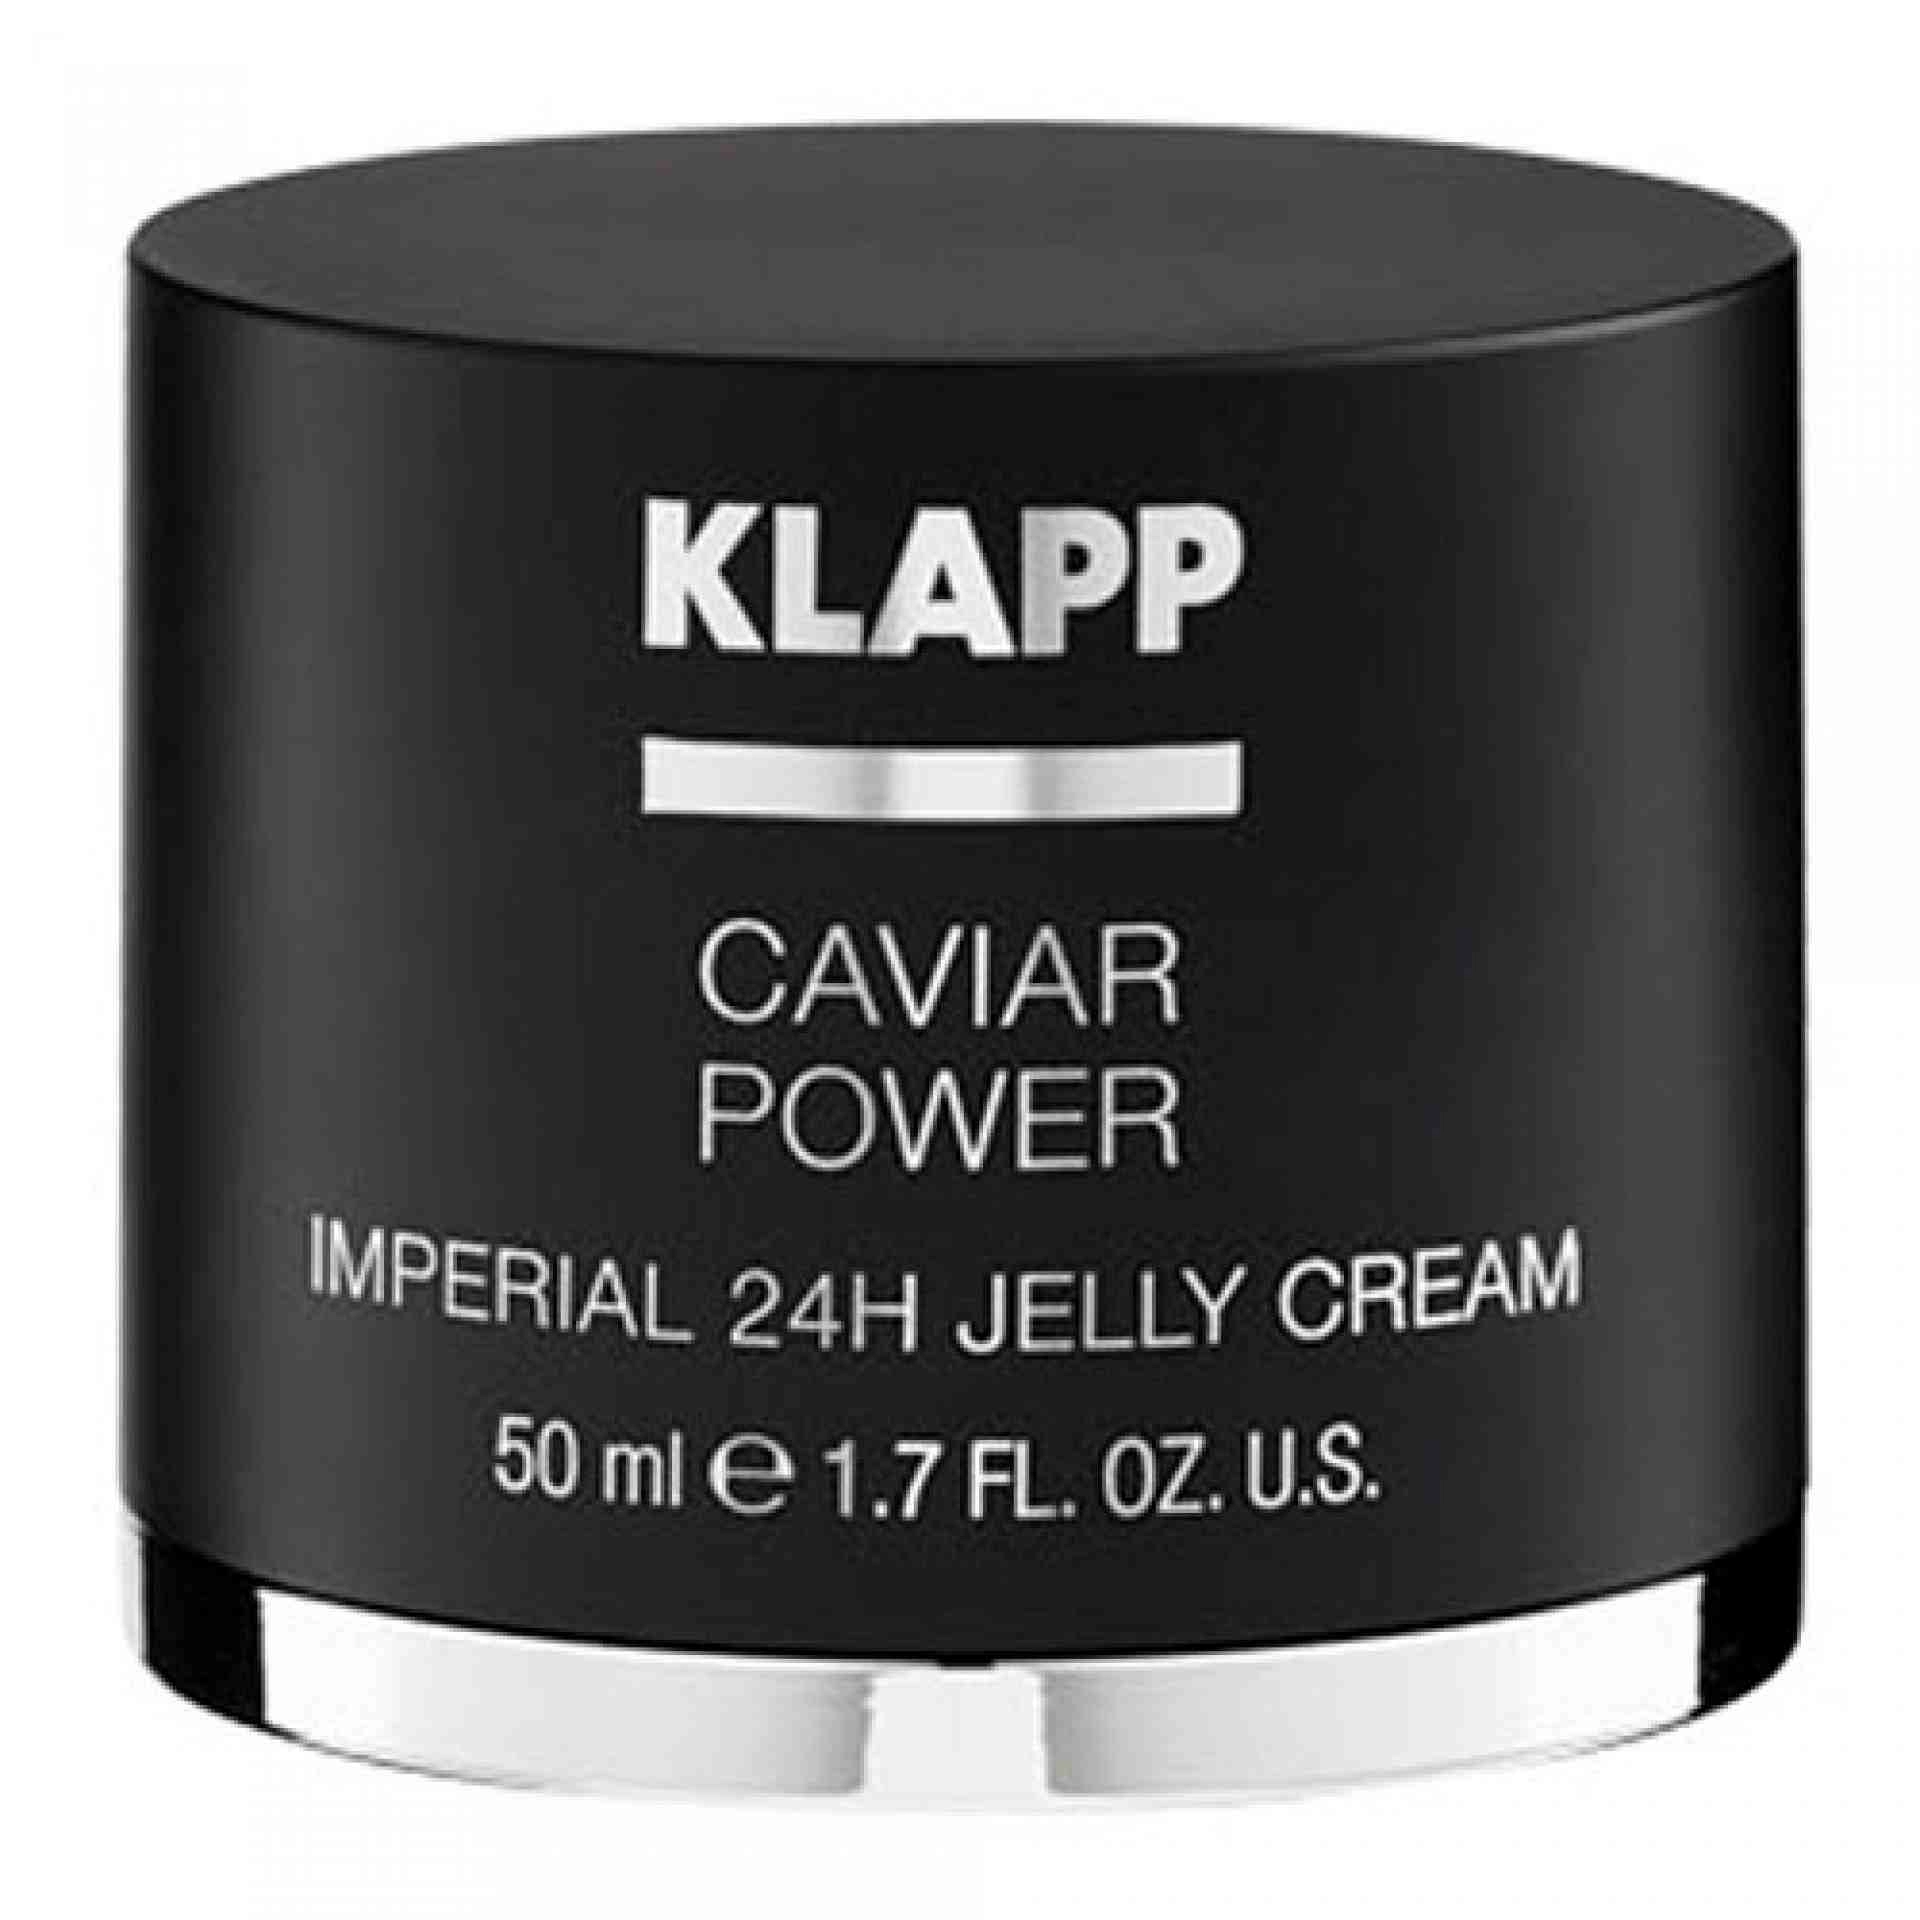 Imperial 24h Jelly Cream | Crema AntiEnvejecimiento 50 ml - Caviar Power - Klapp ®